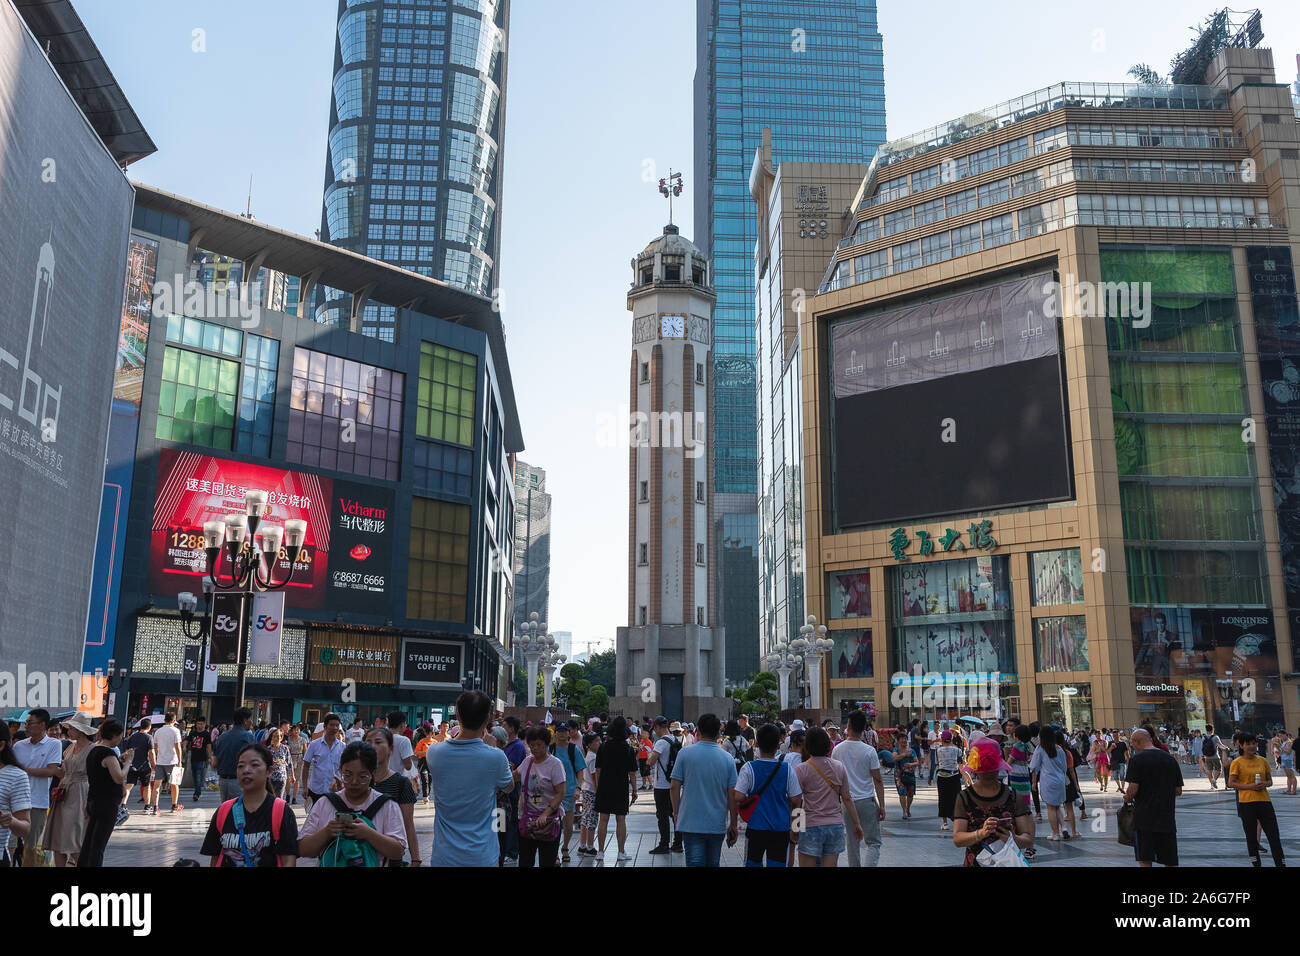 Personnes marchant dans le centre d'affaires de Chongqing, Chongqing est une ville importante dans le sud ouest de la Chine. Elle s'est maintenant développée en ville internationale. Banque D'Images